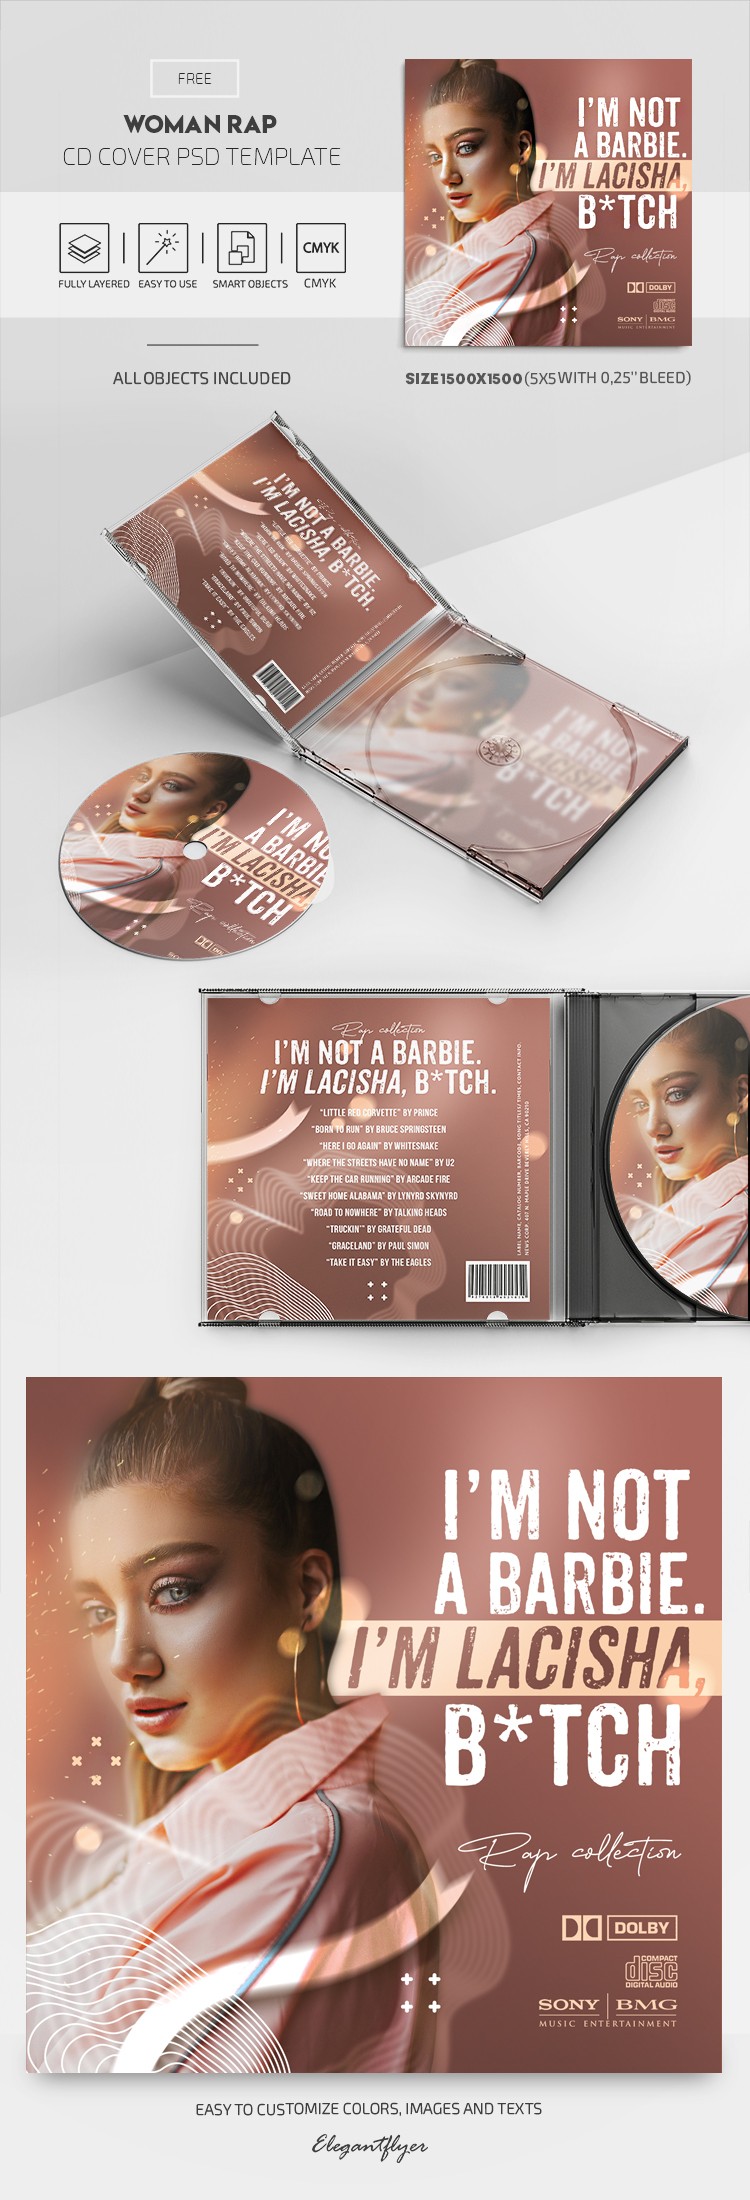 Couverture de CD de rap féminin by ElegantFlyer